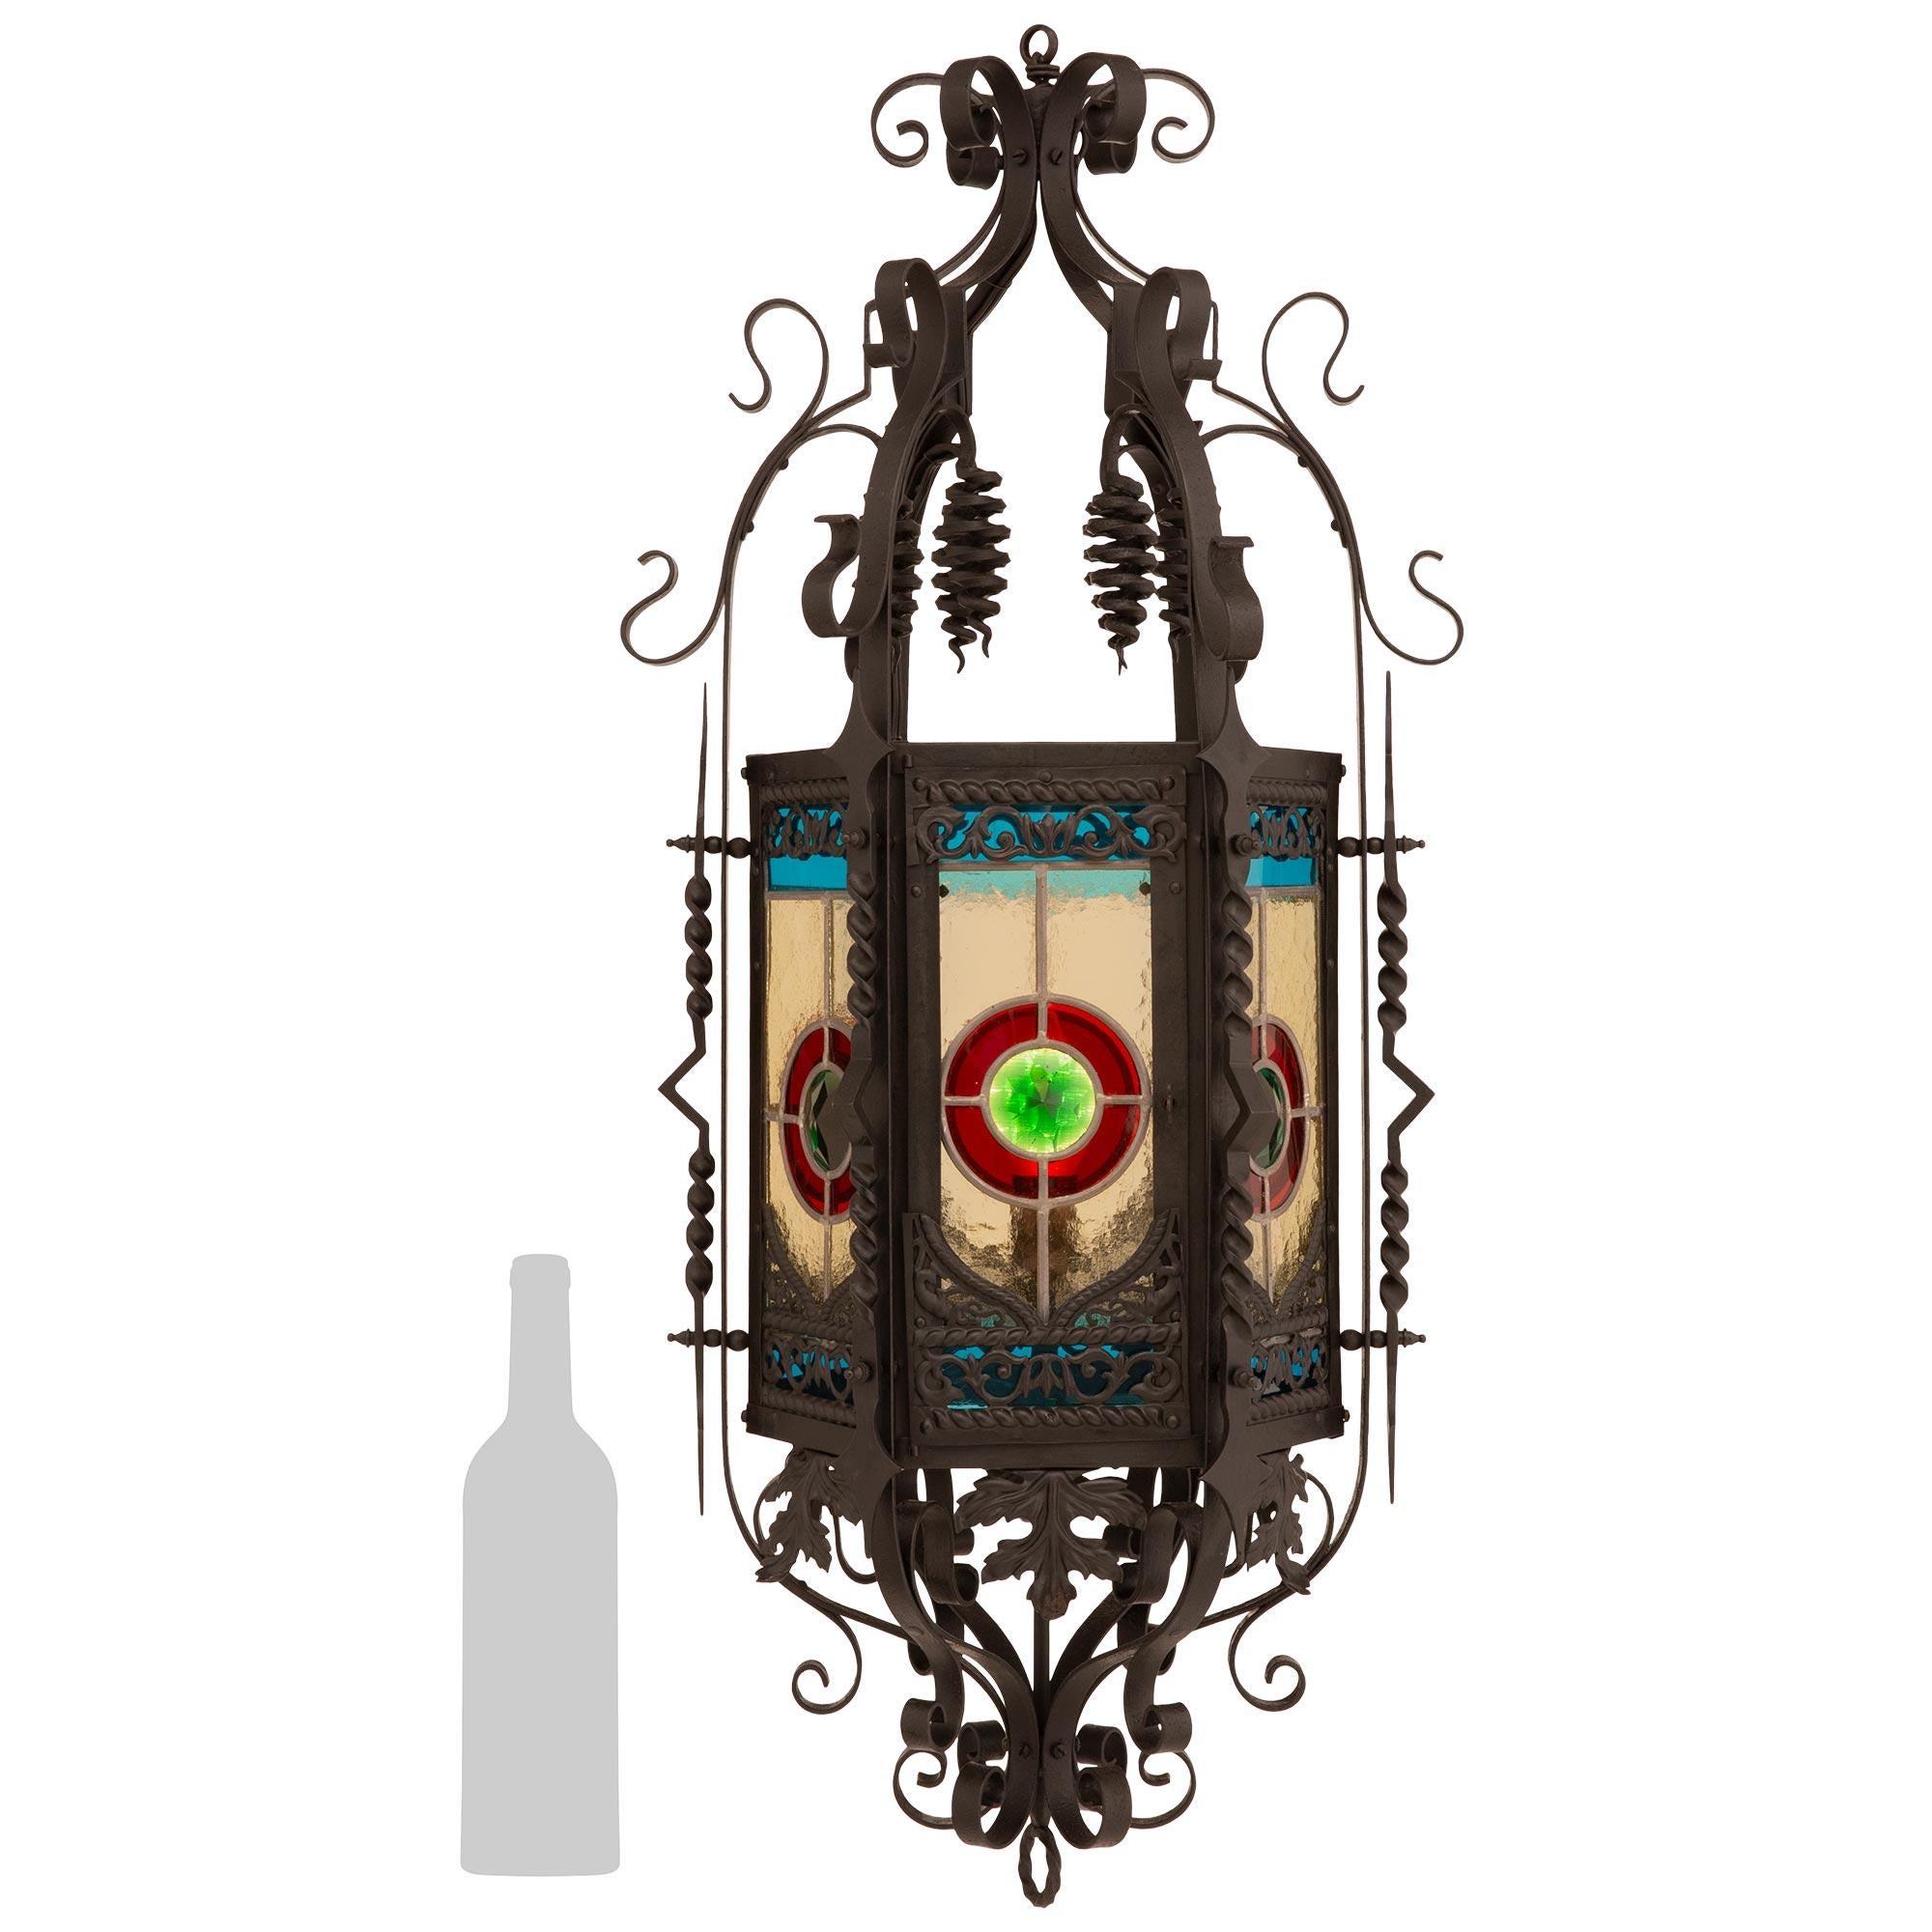 Lanterne en fer forgé et vitrail de haute qualité et très décorative, datant de la Renaissance française du 19ème siècle. Cette magnifique lanterne à six fenêtres est centrée sur le fleuron inférieur d'un anneau en fer forgé en spirale. Au-dessus de